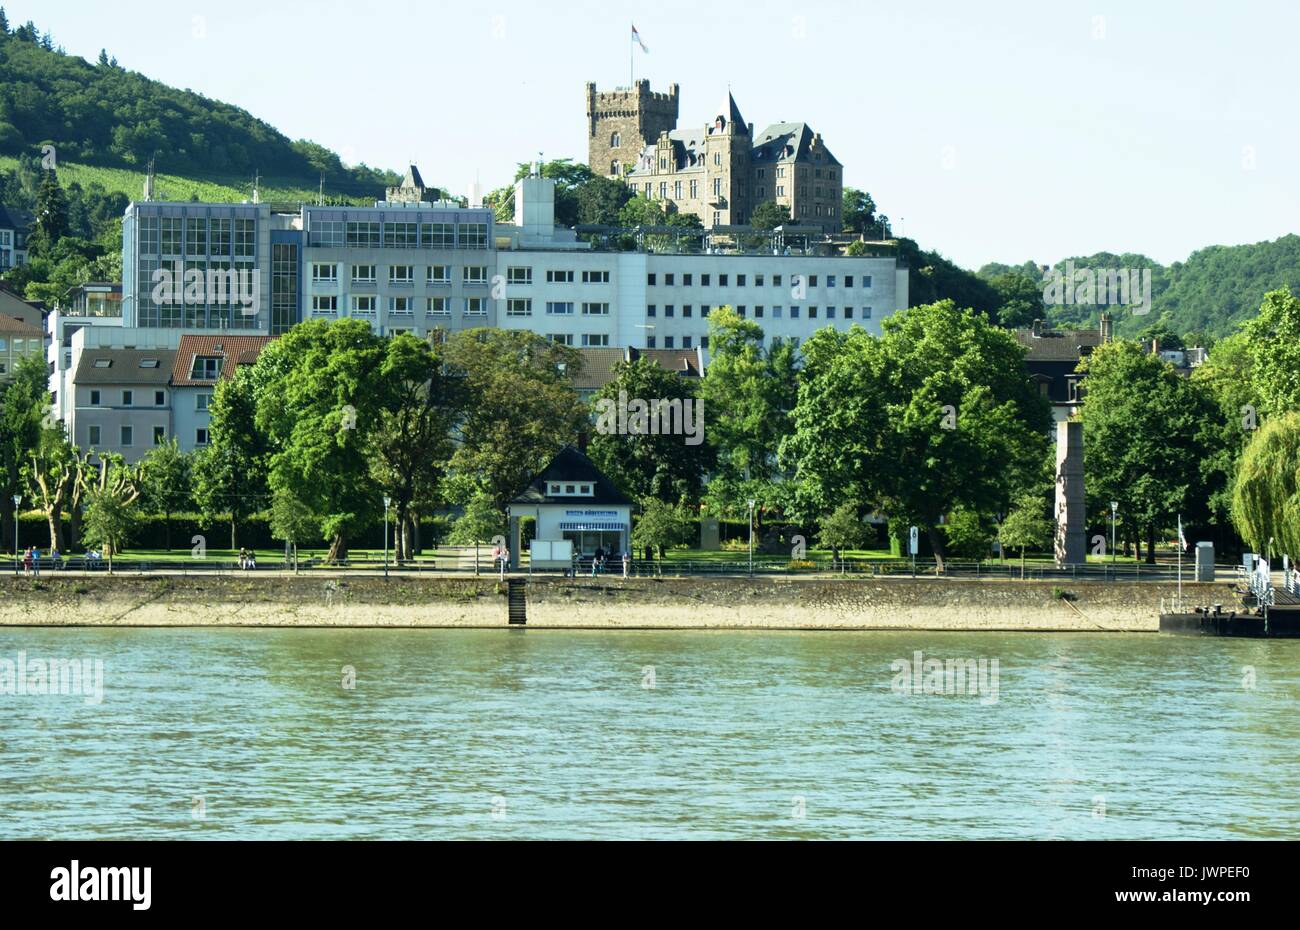 La ville de Bingen avec son château à l'arrière-plan. Allemagne Banque D'Images